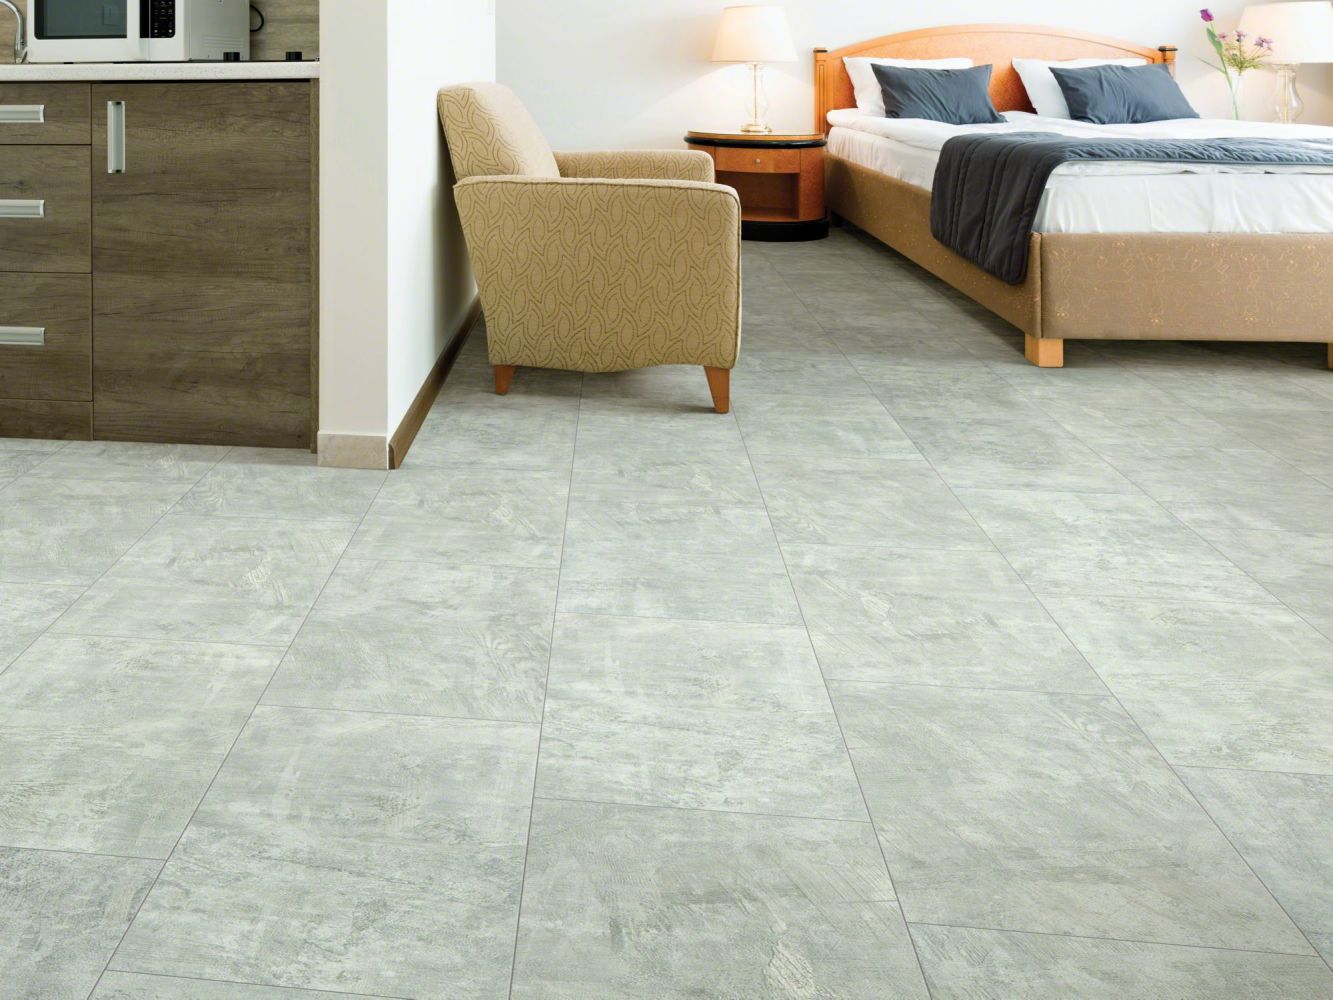 Shaw Floors Resilient Residential Intrepid Tile Plus Graphite 05001_2026V